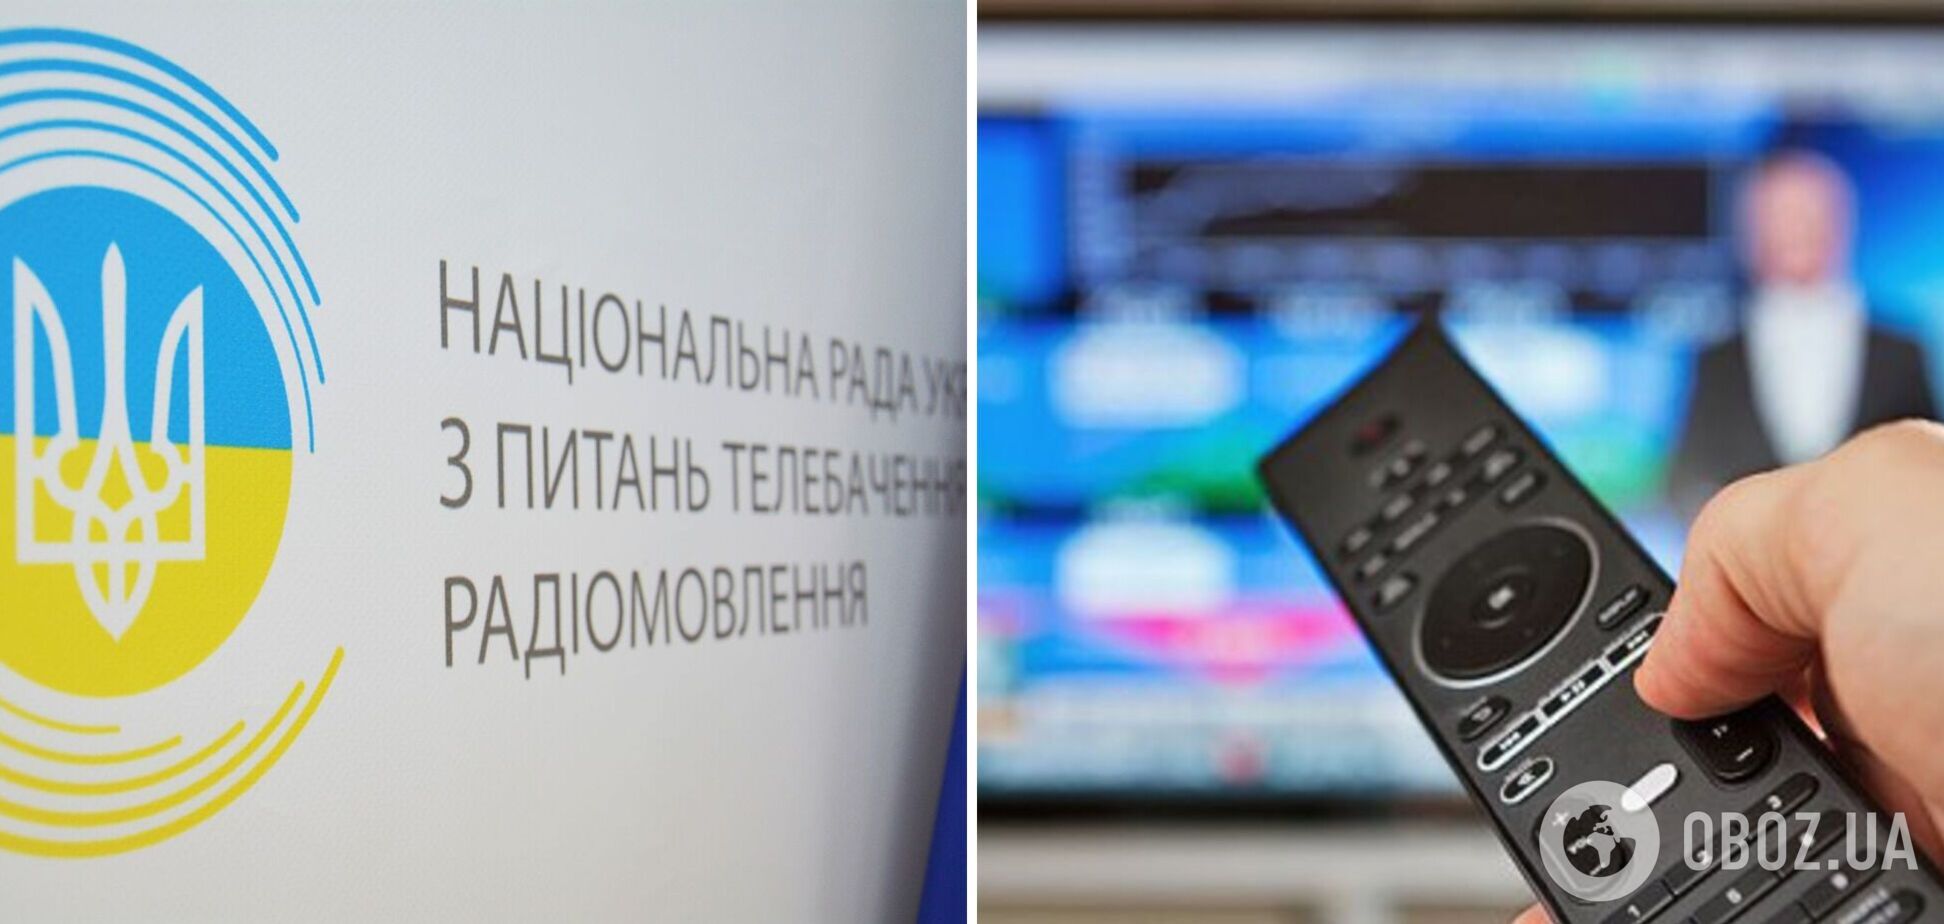 HD REZKA, Баскино, Filmix попали в бан: в Украине запретили трансляцию 16 медиасервисов, связанных с РФ